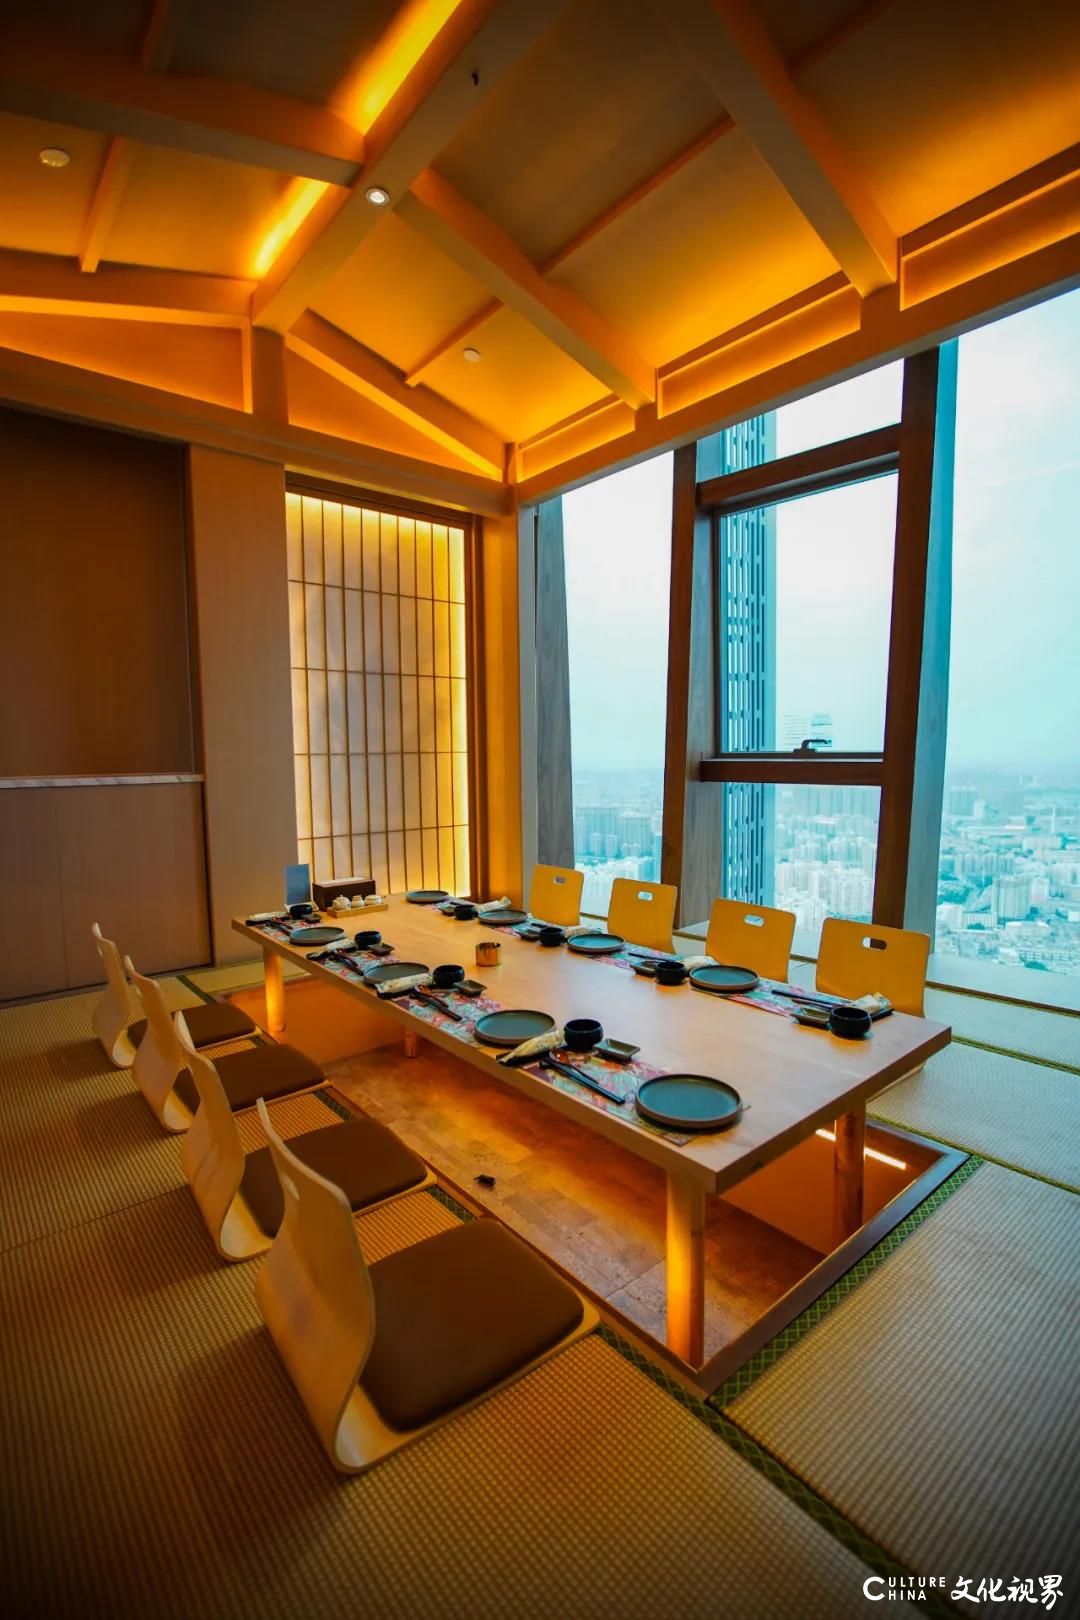 来和彩板前料理，在303米高空享用一顿无敌窗景的日式大餐 （文末还有超值福利哦）